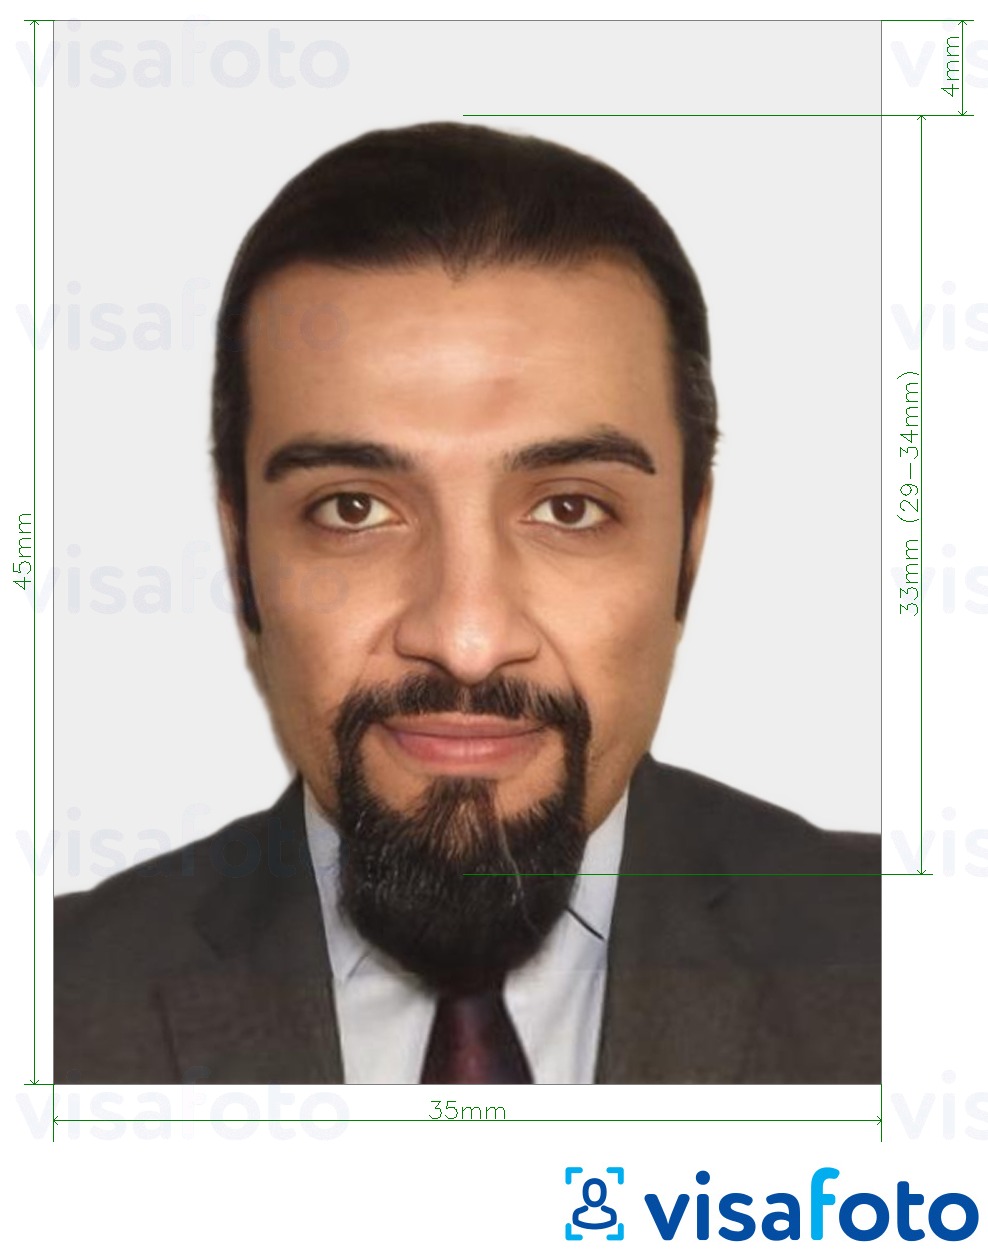 Nuotraukos pavyzdys Maroko nacionalinė asmens tapatybės kortelė 35x45 mm (3,5x4,5 cm) su tikslaus dydžio specifikacija